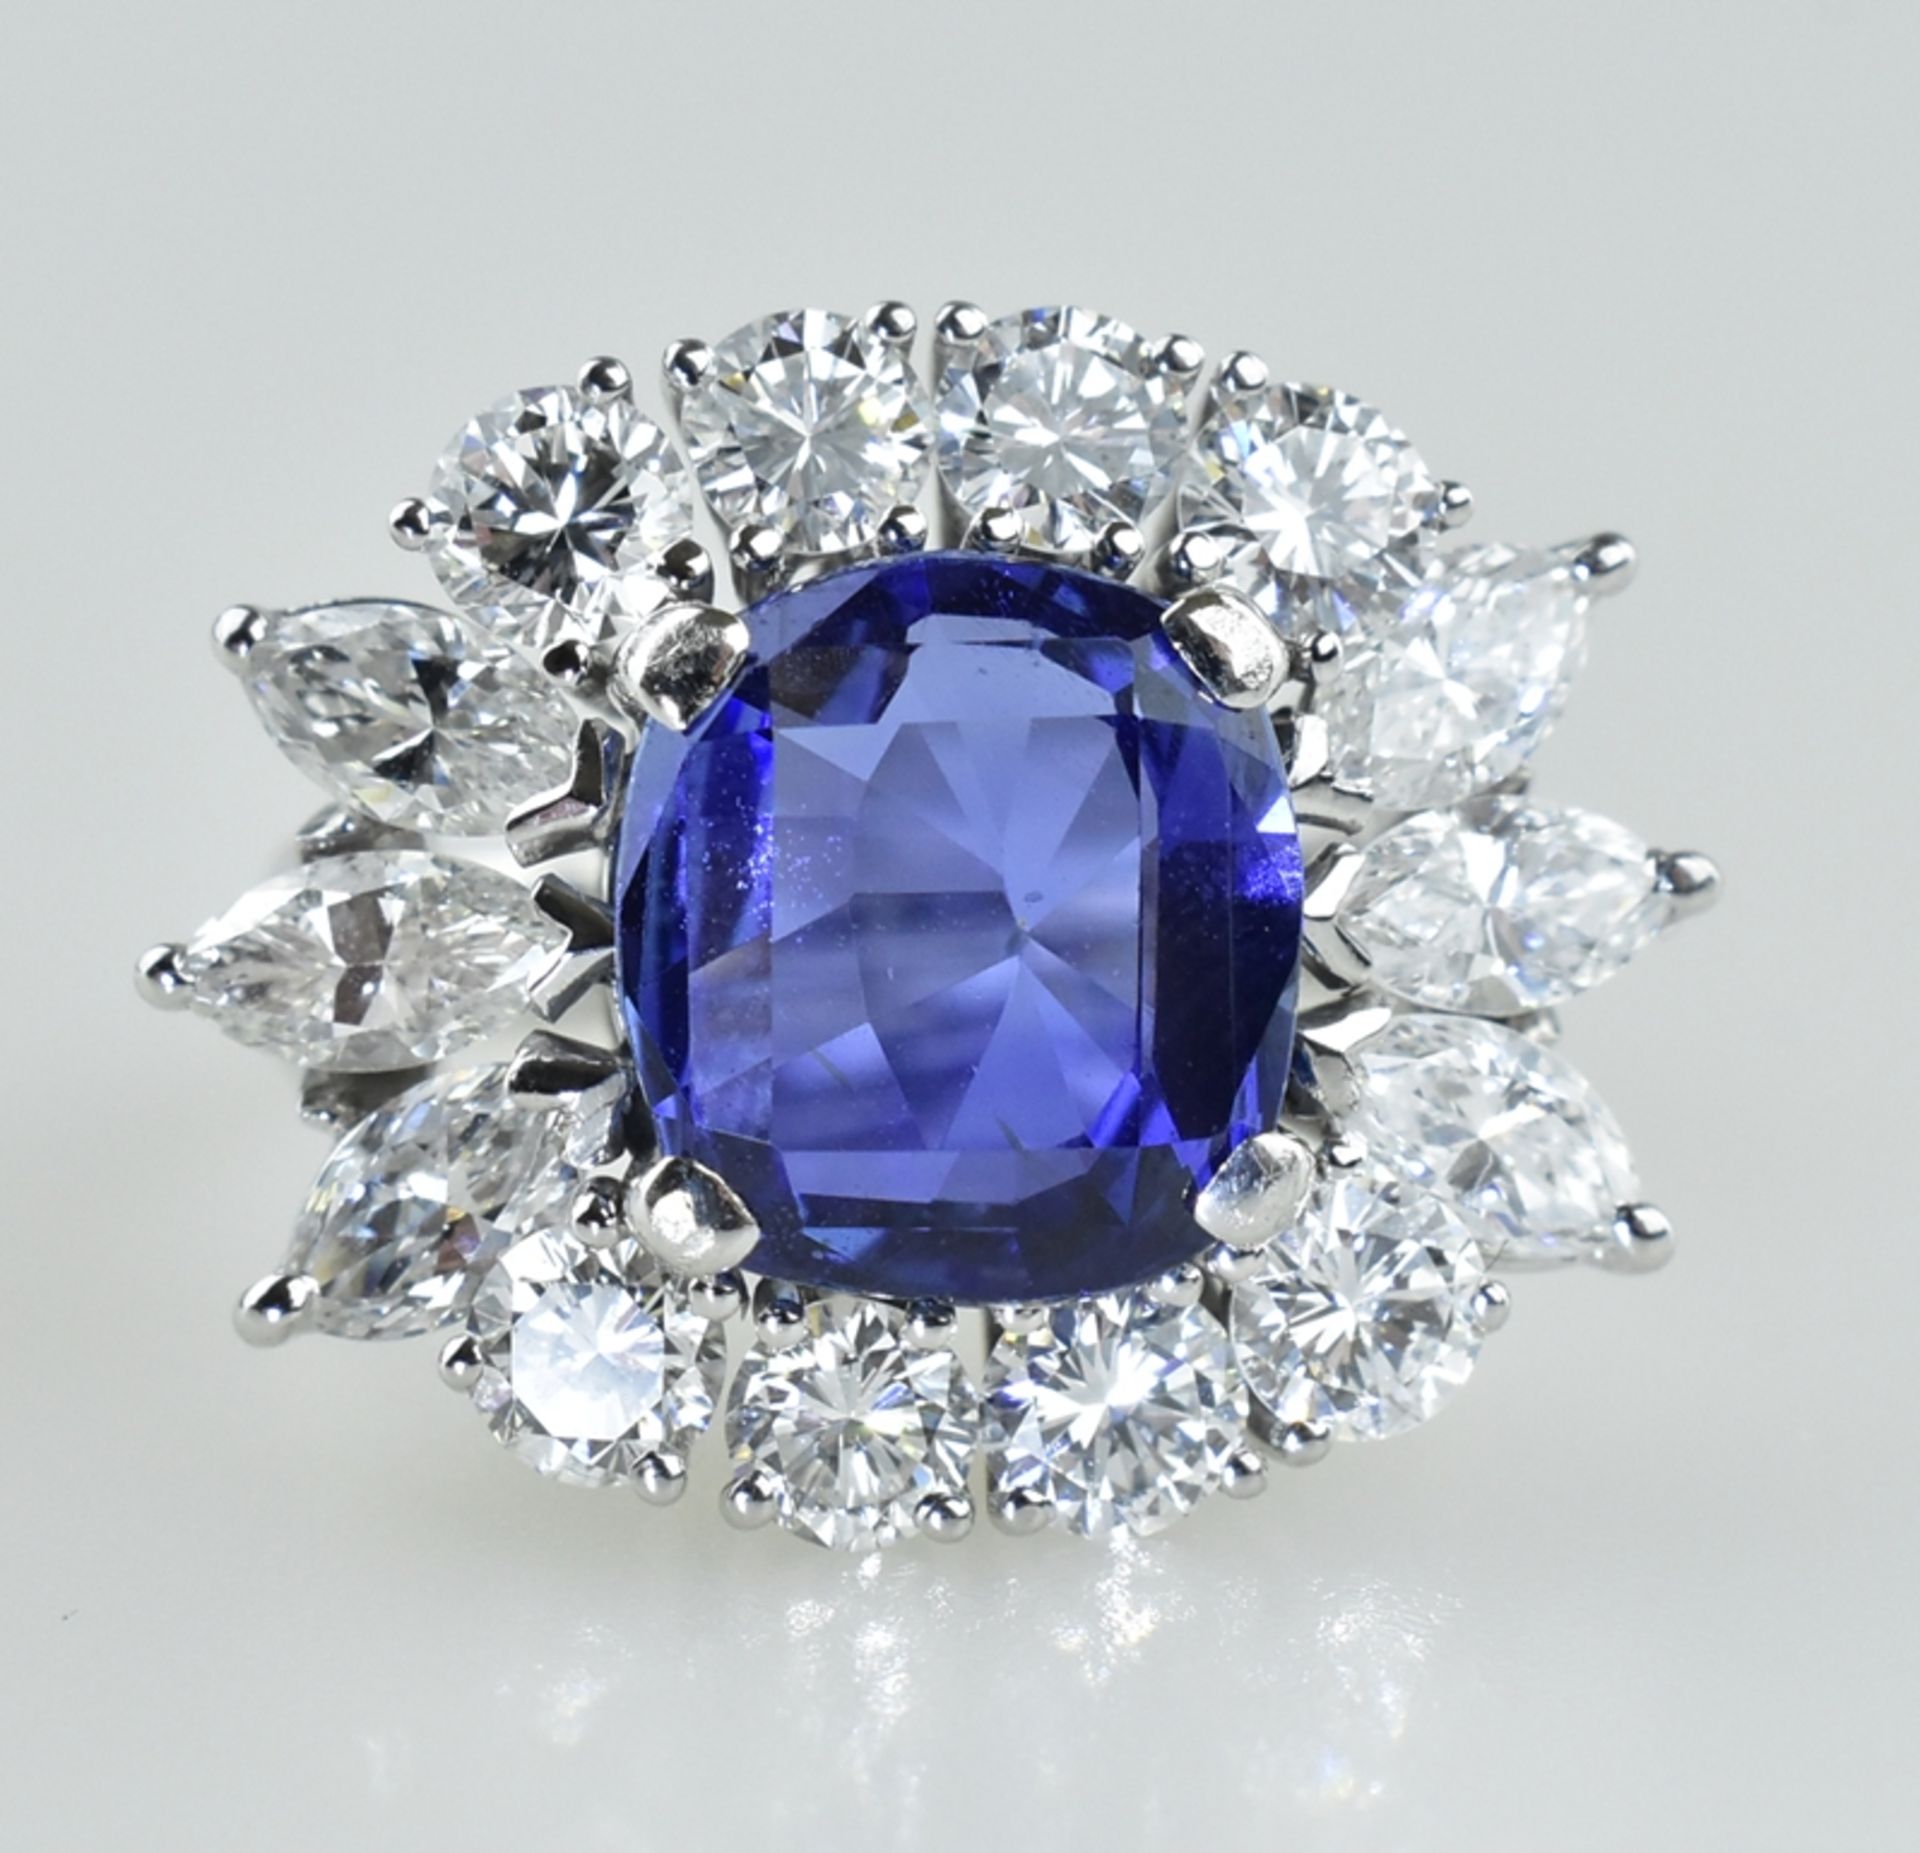 Außergewöhnlicher Ring mit Burma Saphir. Saphir von 5,94 ct. in leuchtendem Blau. Kissenschliff. Ed - Image 3 of 3